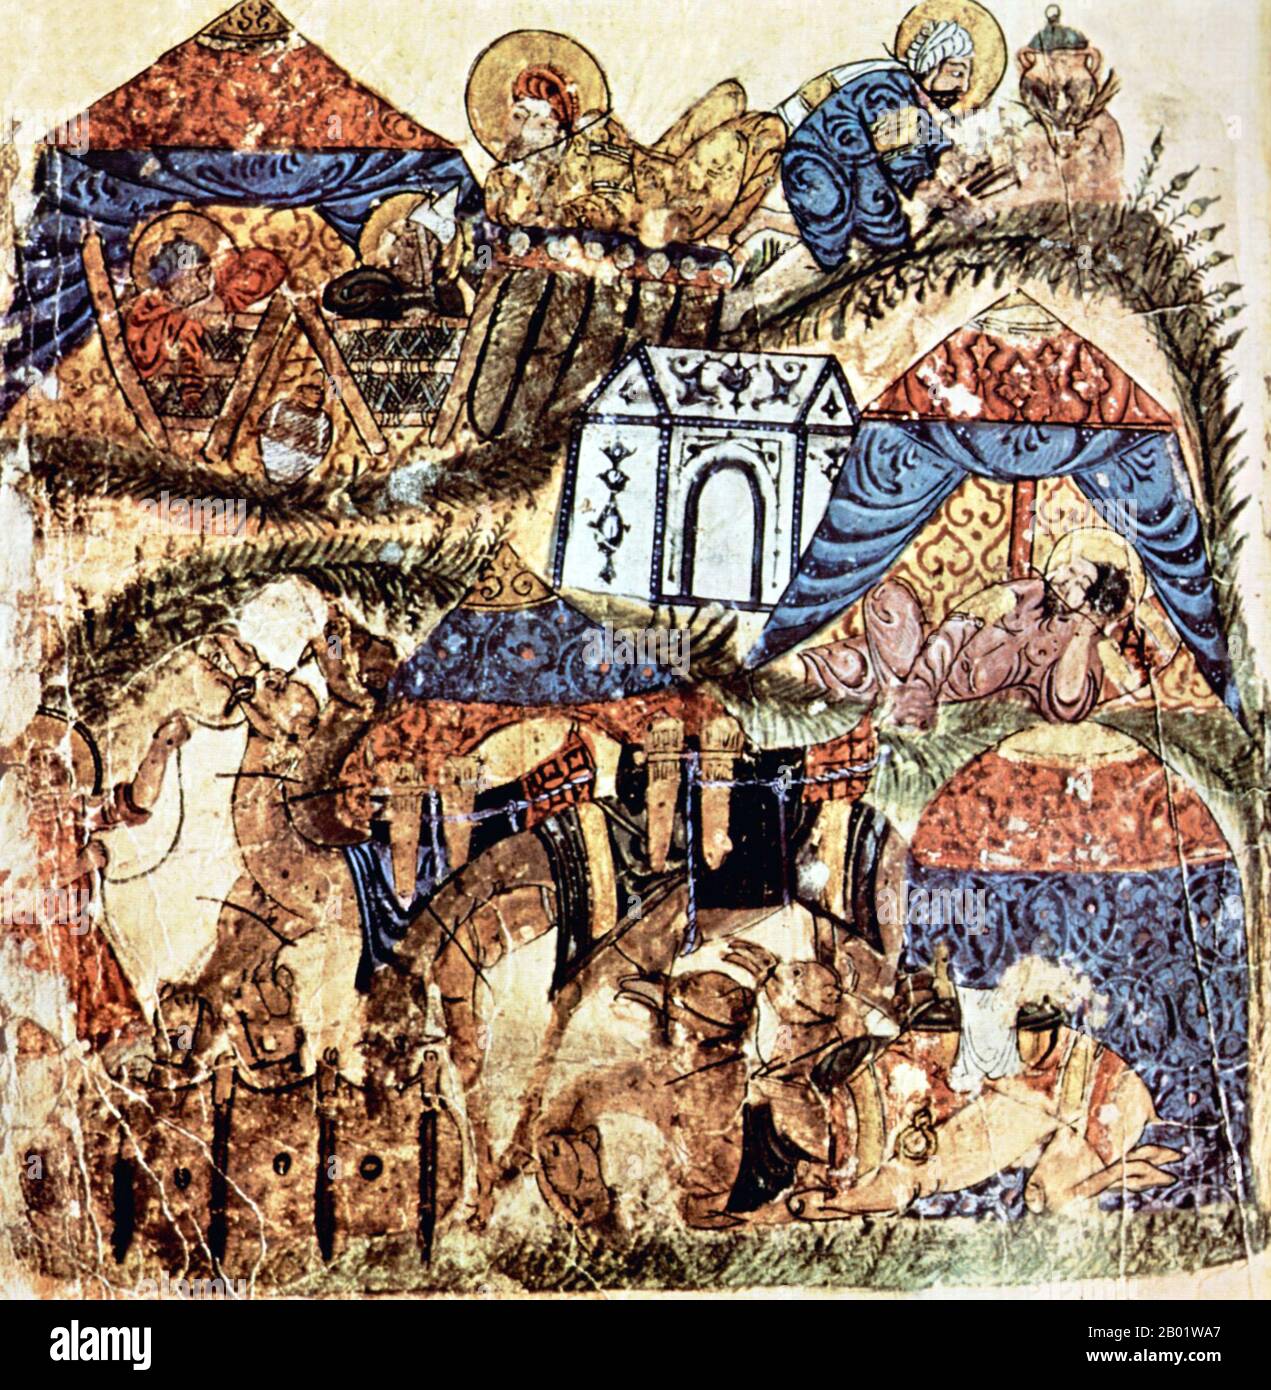 Iraq: Un posto di sosta per caravanserragli o carovane con tende per viaggiatori. Pittura in miniatura dal 'Maqam' o 'Assemblea' di al-Hariri di Bassora, c. 1225-1235. Le Maqāma (letteralmente "assemblee") sono un genere letterario arabo (originariamente) di prosa rima con intervalli di poesia in cui la stravaganza retorica è evidente. Si dice che l'autore del X secolo Badī al-Zaman al-Hamadhāni abbia inventato la forma, che fu estesa da al-Hariri di Bassora nel secolo successivo. Foto Stock